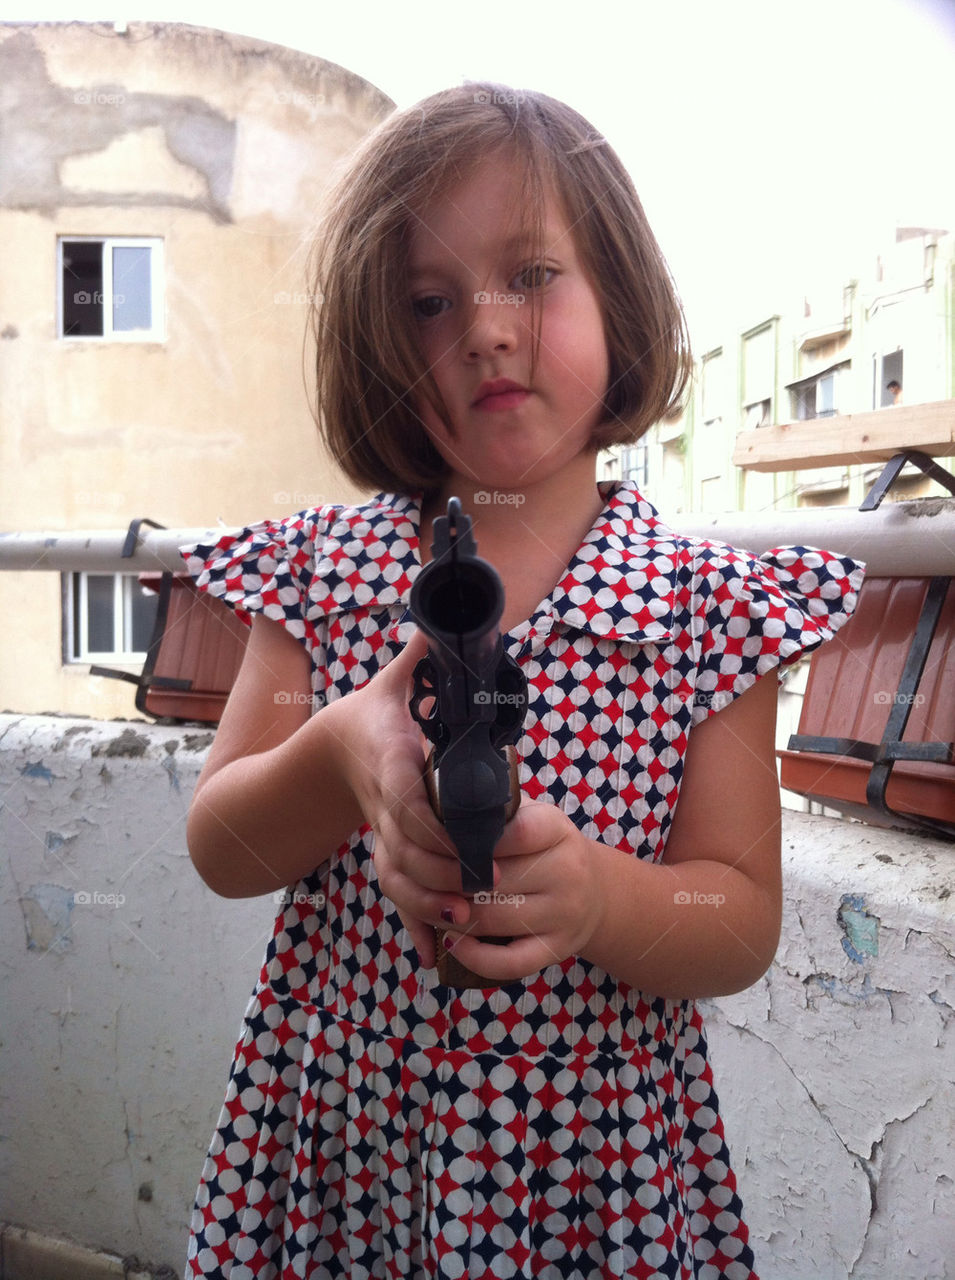 A girl with a gun